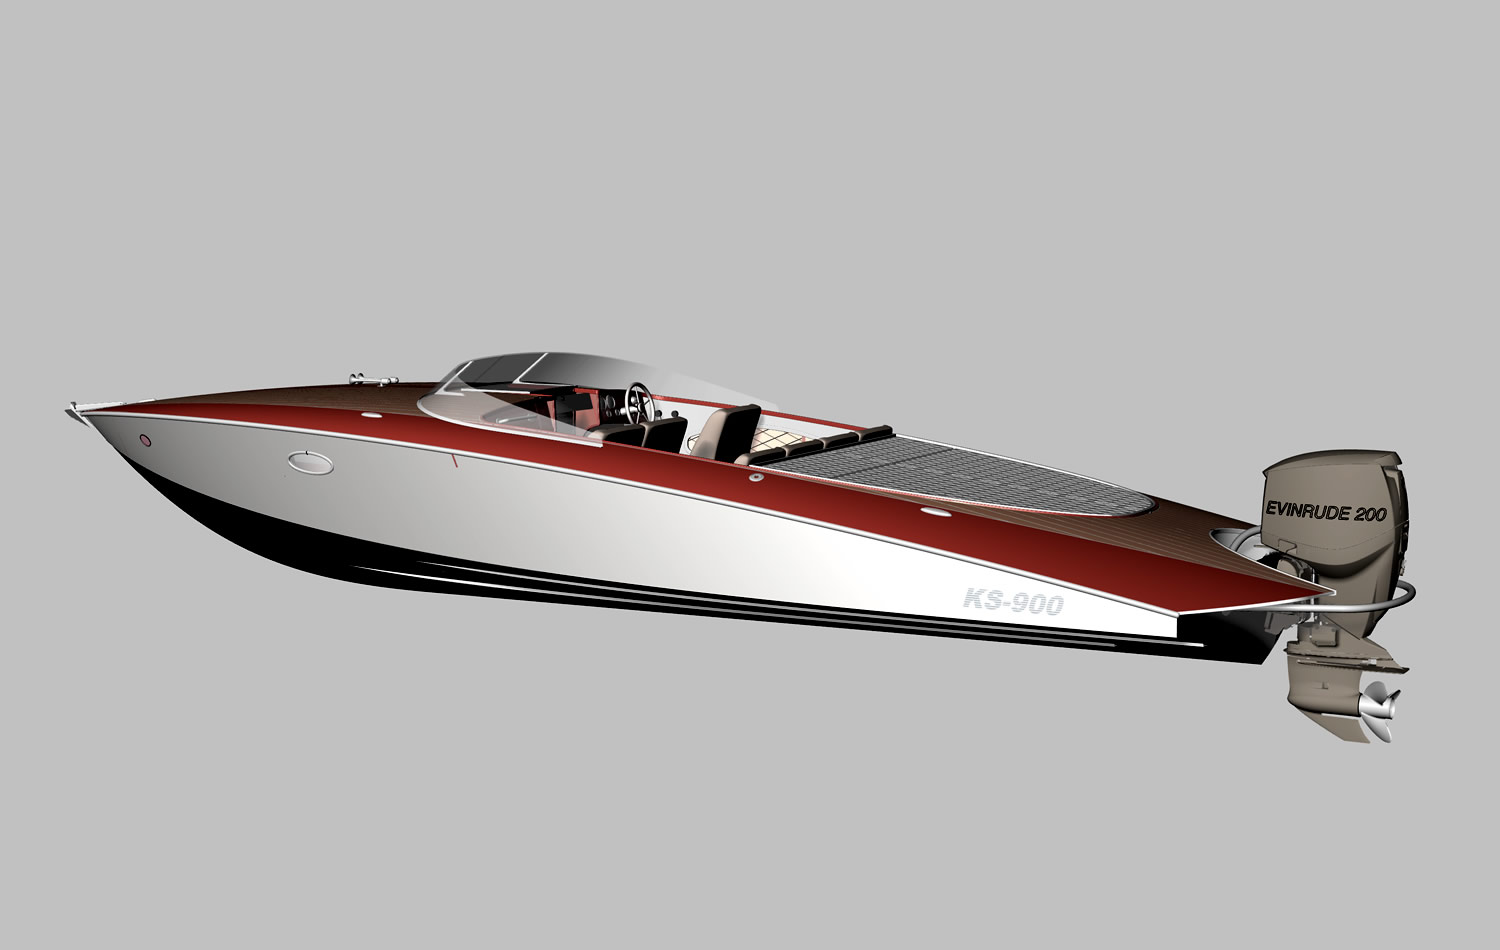 Проект моторной лодки 5 метров, чертежи. Построить самодельную мотолодку из фанеры